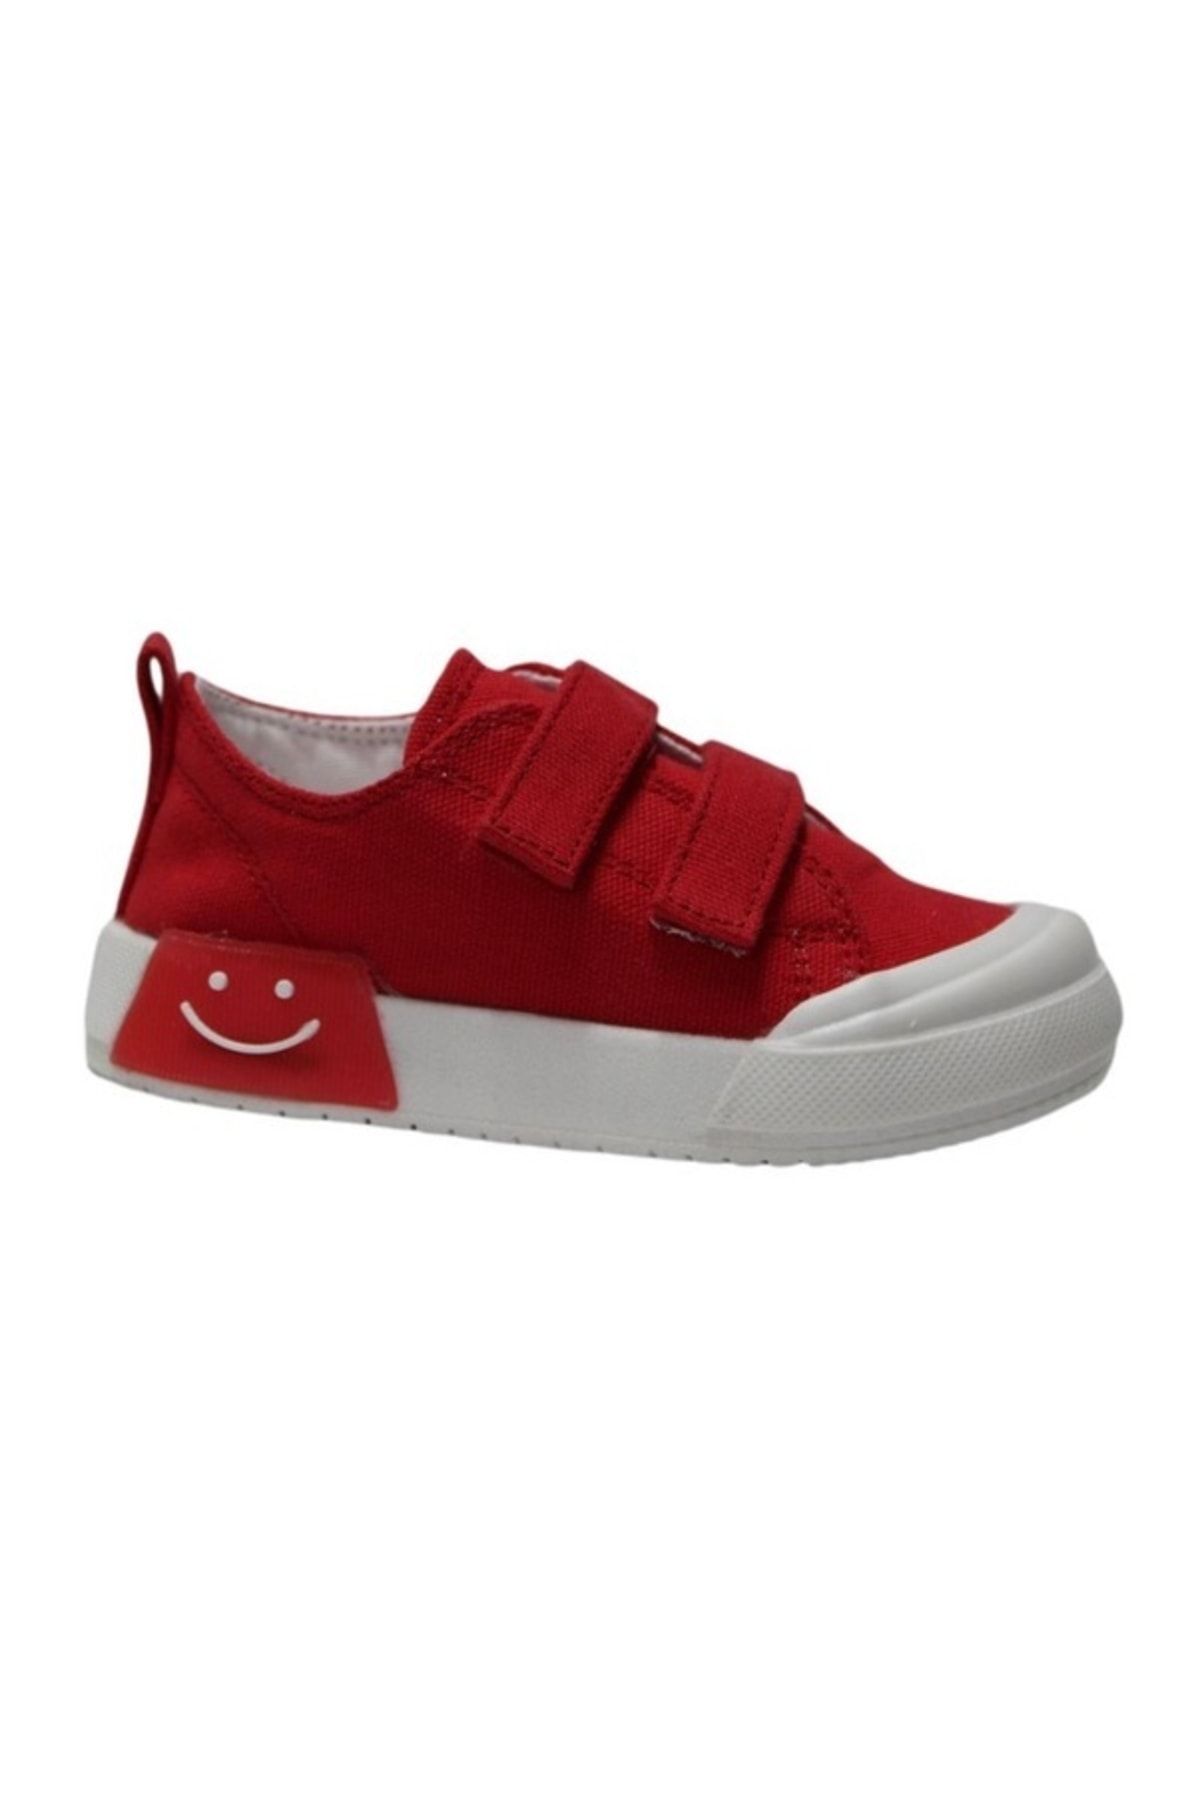 Vicco Luffy Işıklı Ünisex Çocuk Kırmızı Spor Ayakkabı